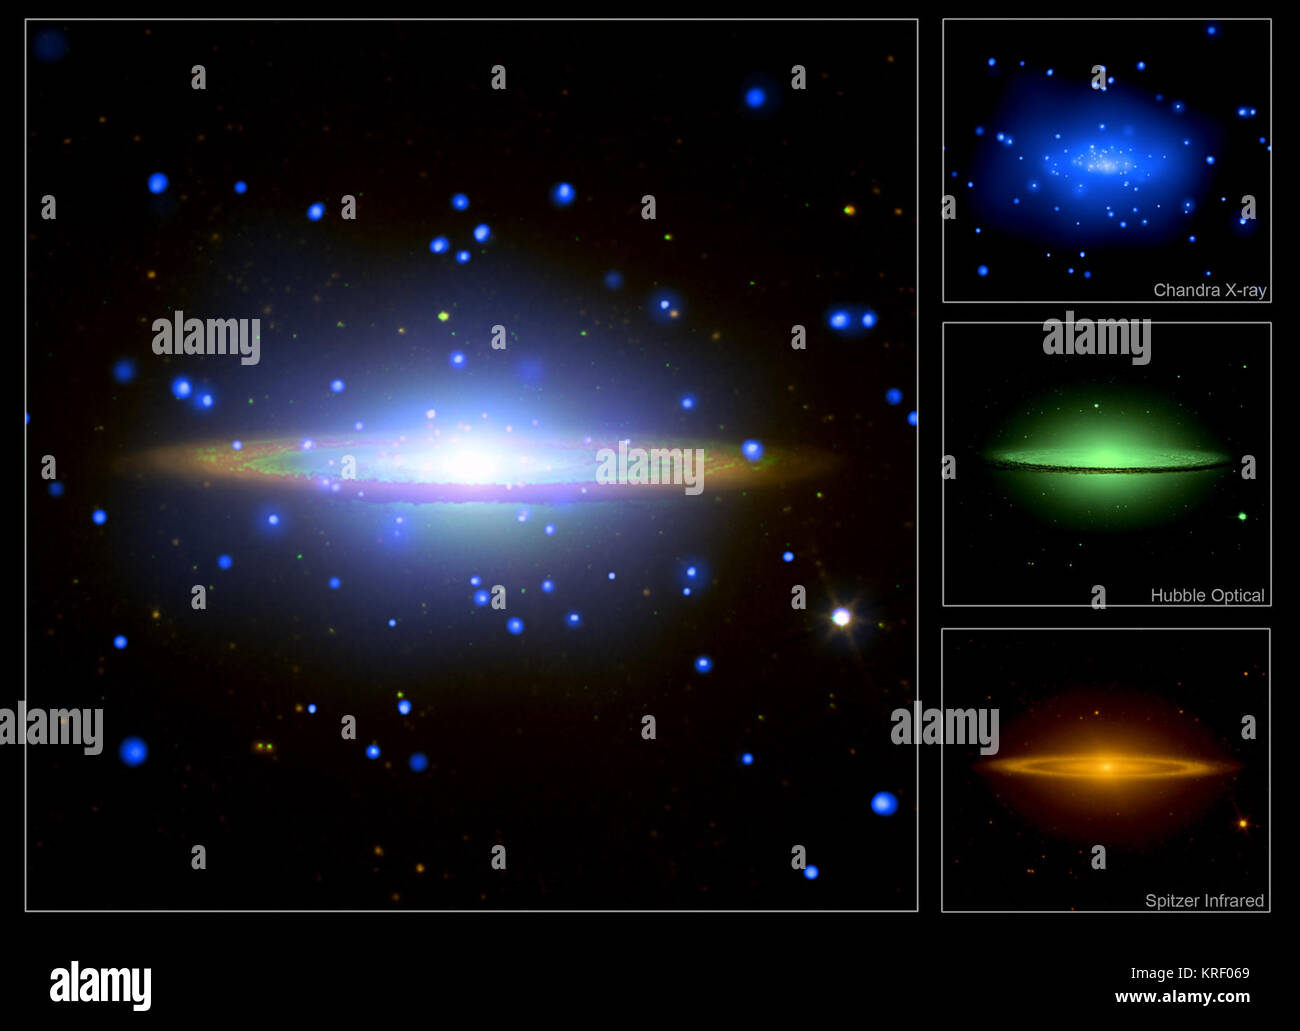 Diese große Observatorien Blick auf den berühmten Sombrero Galaxie wurde mit Chandra, Hubble und Spitzer. Die Abbildung zeigt das kombinierte Bild aus den drei Teleskope, während die eingefügten Bilder der separaten Observatorium Ansichten zeigen. Chandra X-ray Bild (blau) Zeigt heiße Gas der Galaxie und Quellen, die aus einer Mischung von Objekten innerhalb der Galaxien und Quasare im Hintergrund. Optisches Bild von Hubble (grün) zeigt die Wölbung von Starlight teilweise durch eine Felge von Staub, die Hell in Infrarot Spitzers Ansicht leuchtet blockiert. Sombrero Galaxie Stockfoto